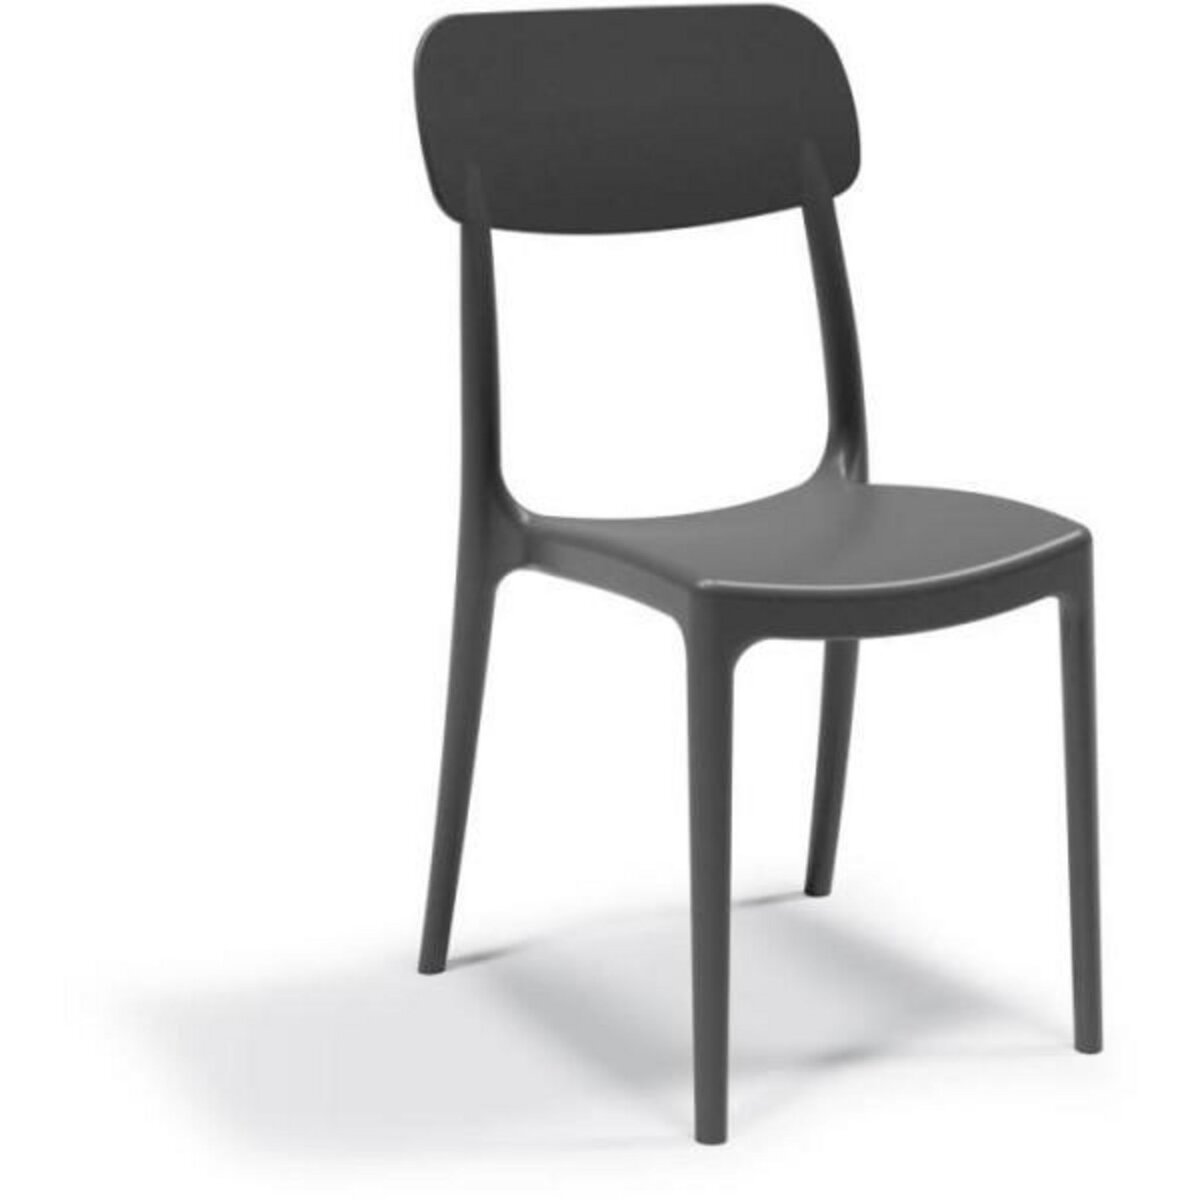 MARKET24 Chaise de jardin - ARETA - CALIPSO - Noir - 53 x 46 x H 88 cm - Résine - Utilisation domestique et collective